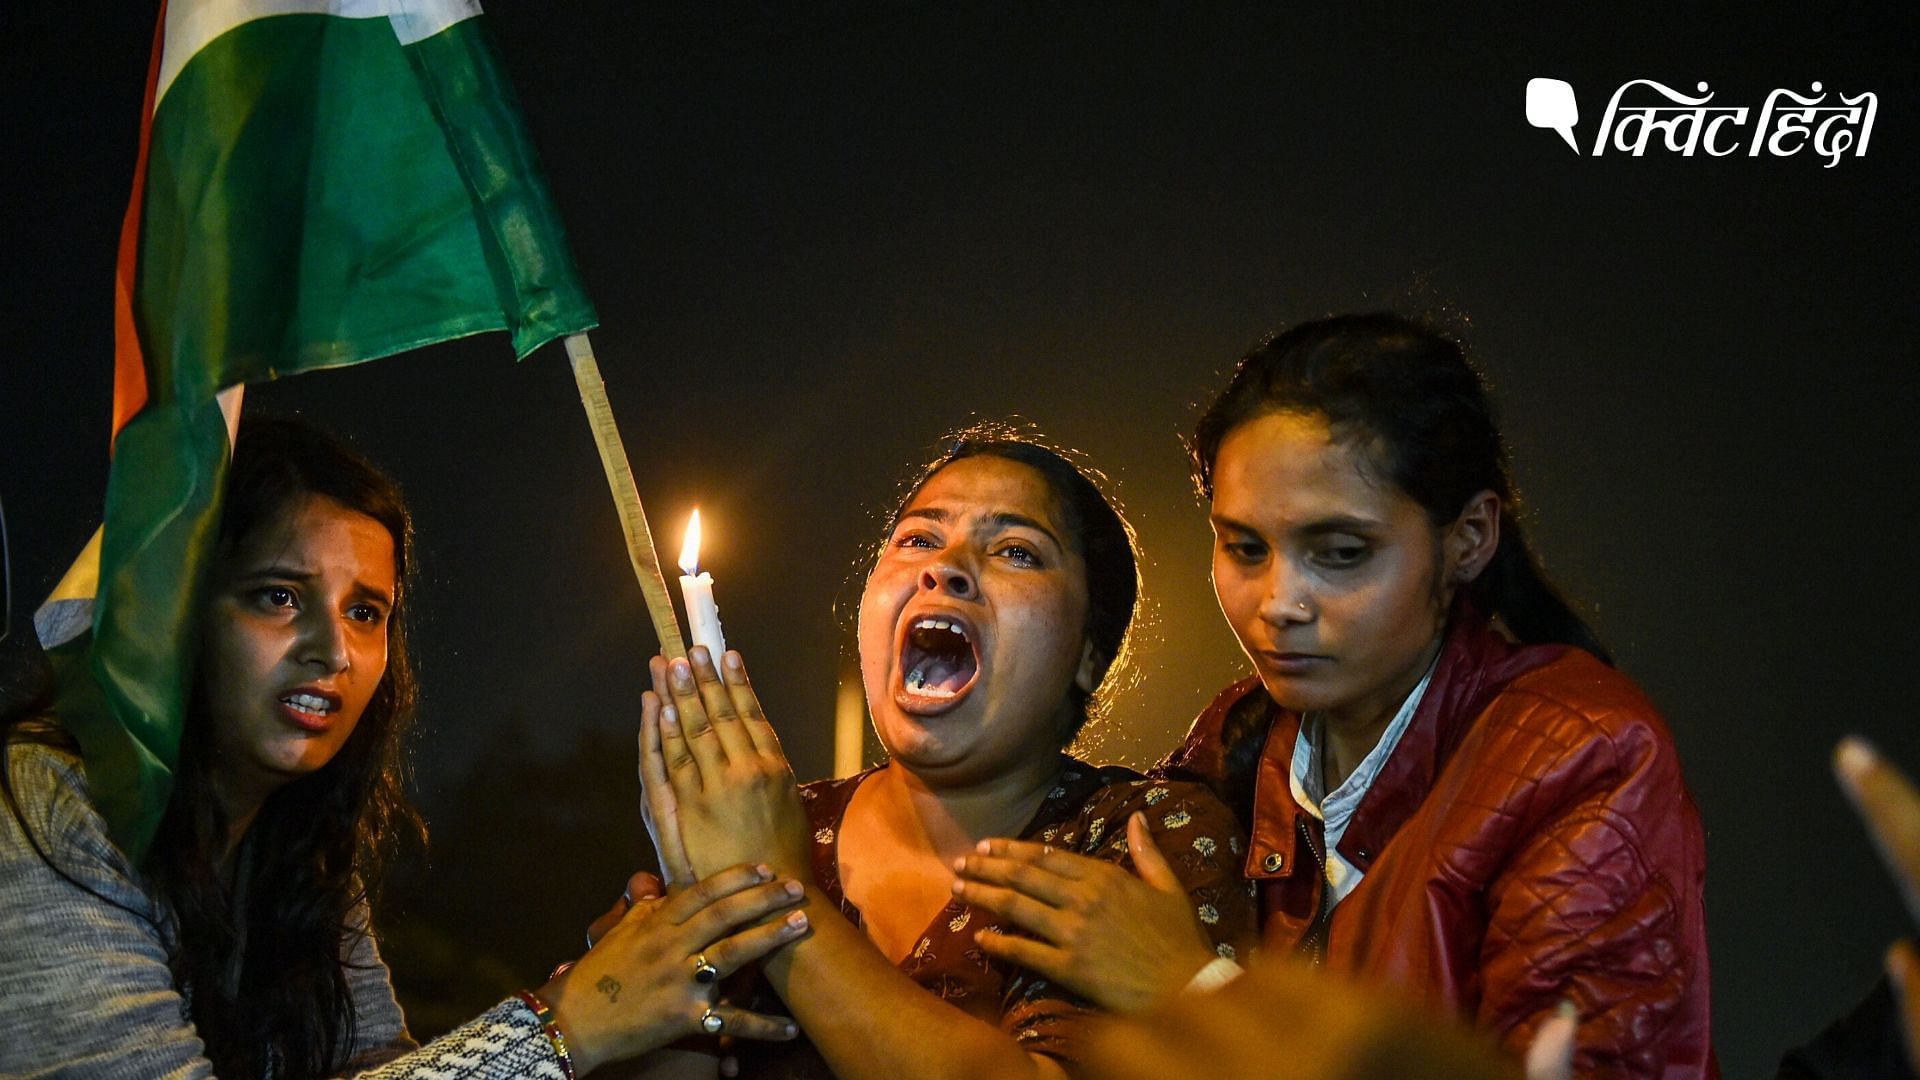 इंडिया गेट पर महिलाओं की सुरक्षा की मांग को लेकर प्रदर्शन करती लड़कियां